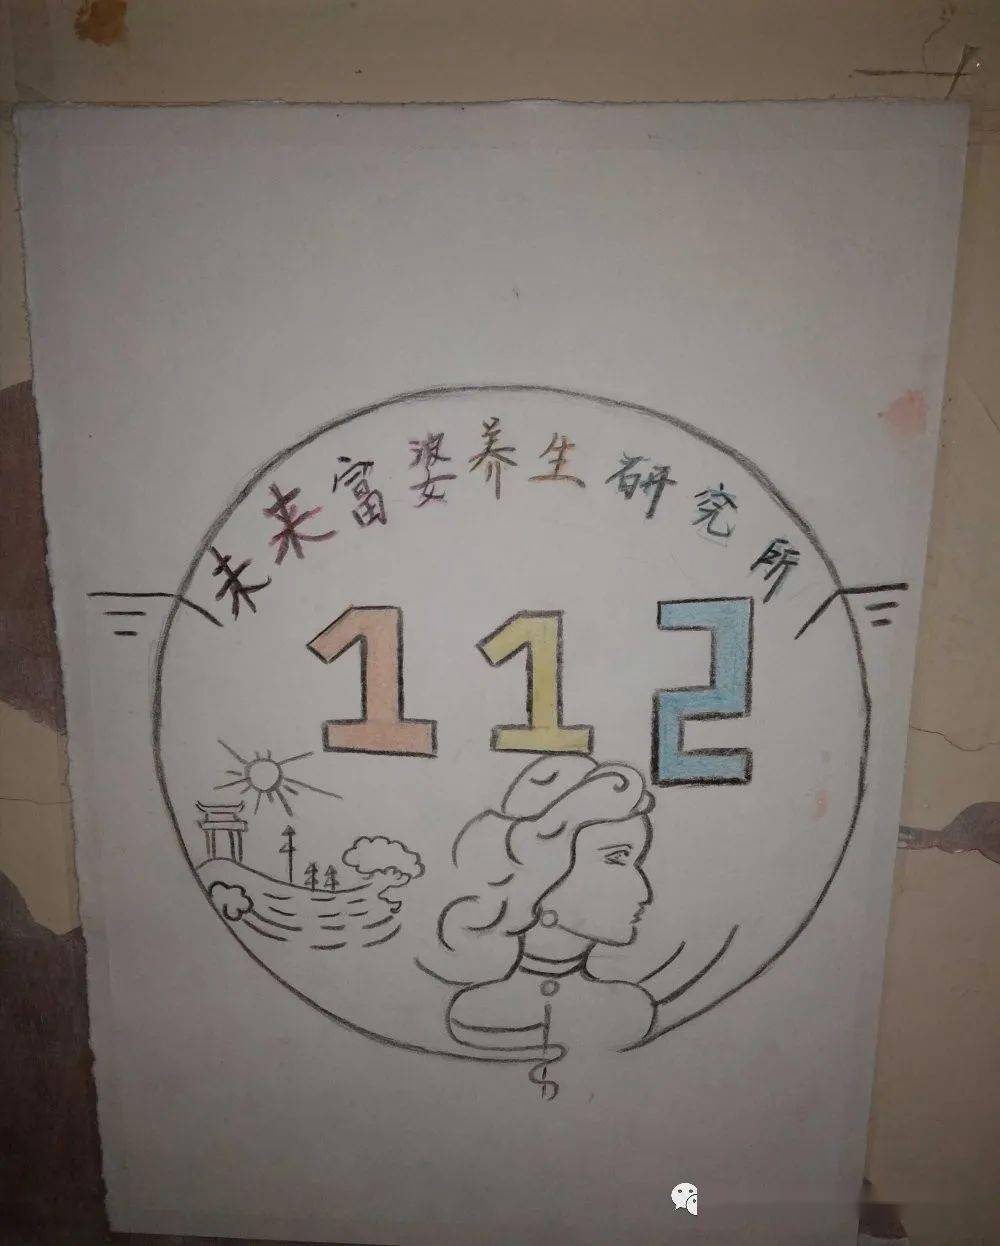 【团学活动】我系20级宿舍logo创意展示(二)_寝室